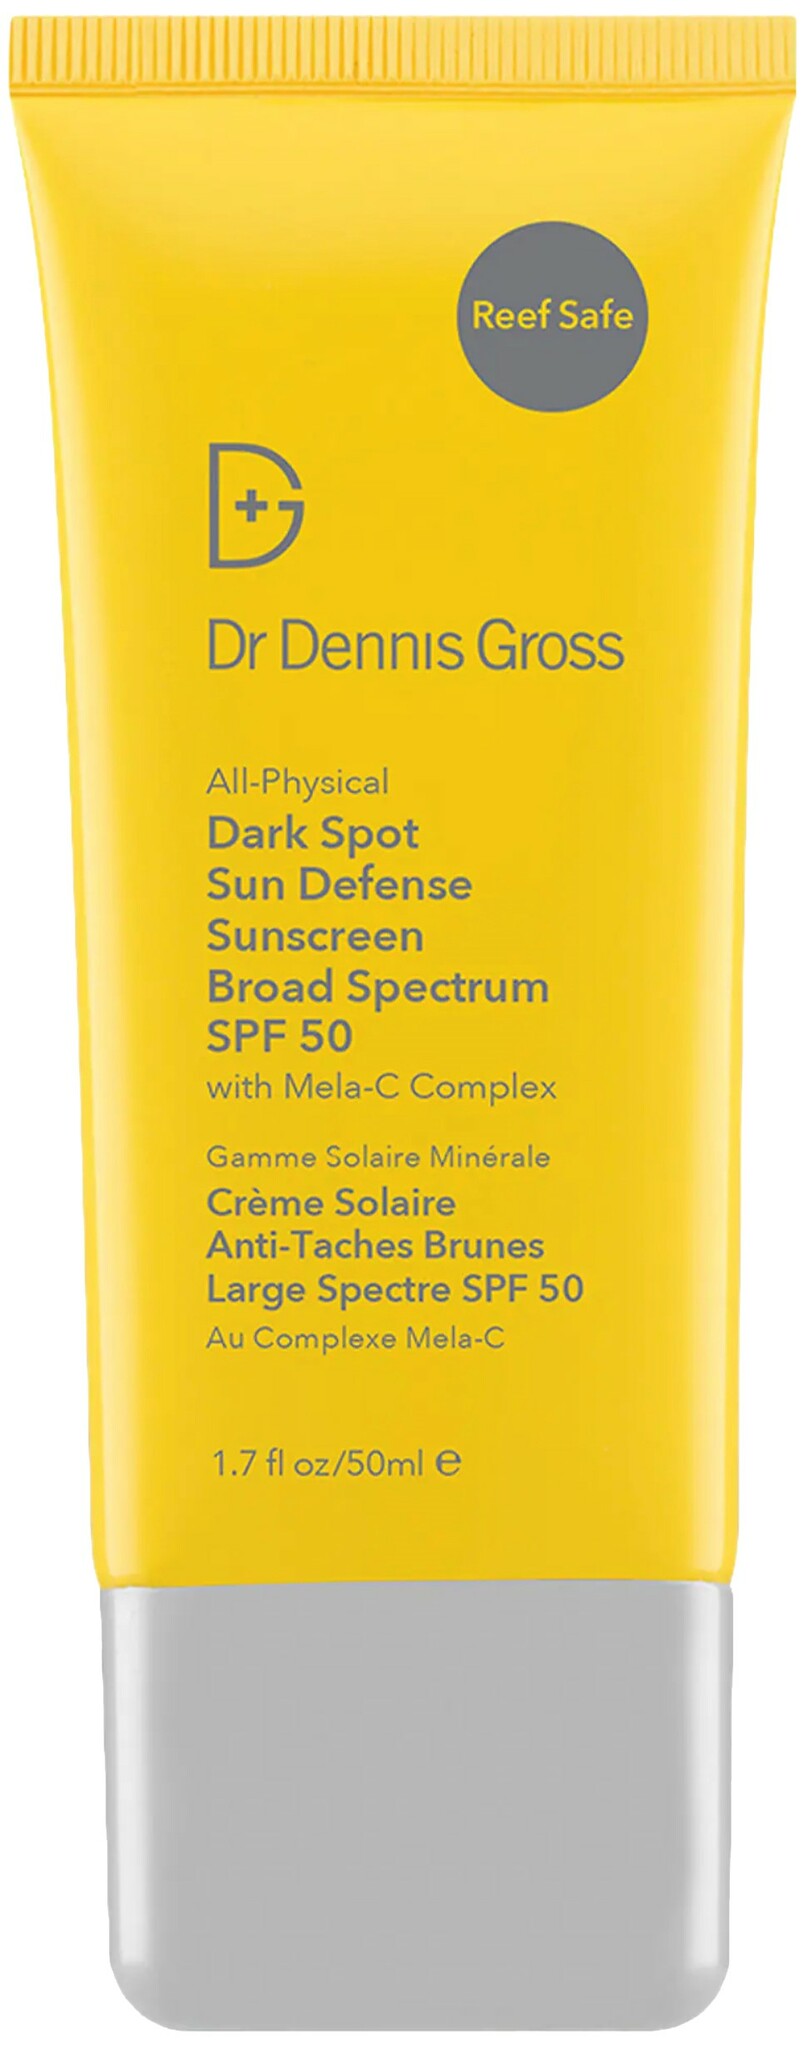 Dark Spot Sun Defence SPF 50 Sunscreen 50 ml, Dr. Dennis Gross